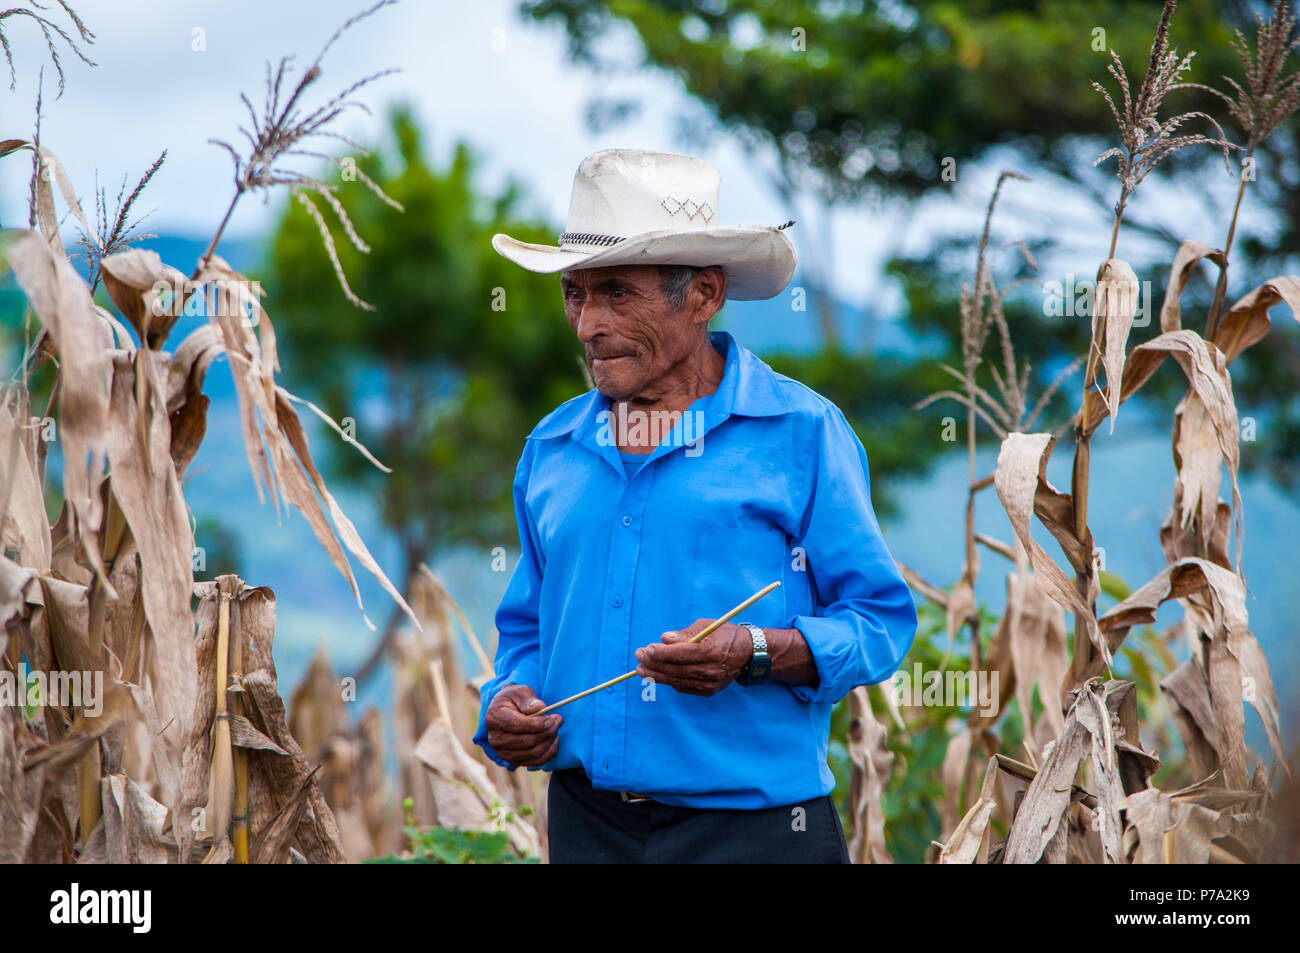 Campesino en la sierra de Chiapas. Estos campesinos mezclan el cultivo de maíz con otros cultivos forestales Stock Photo